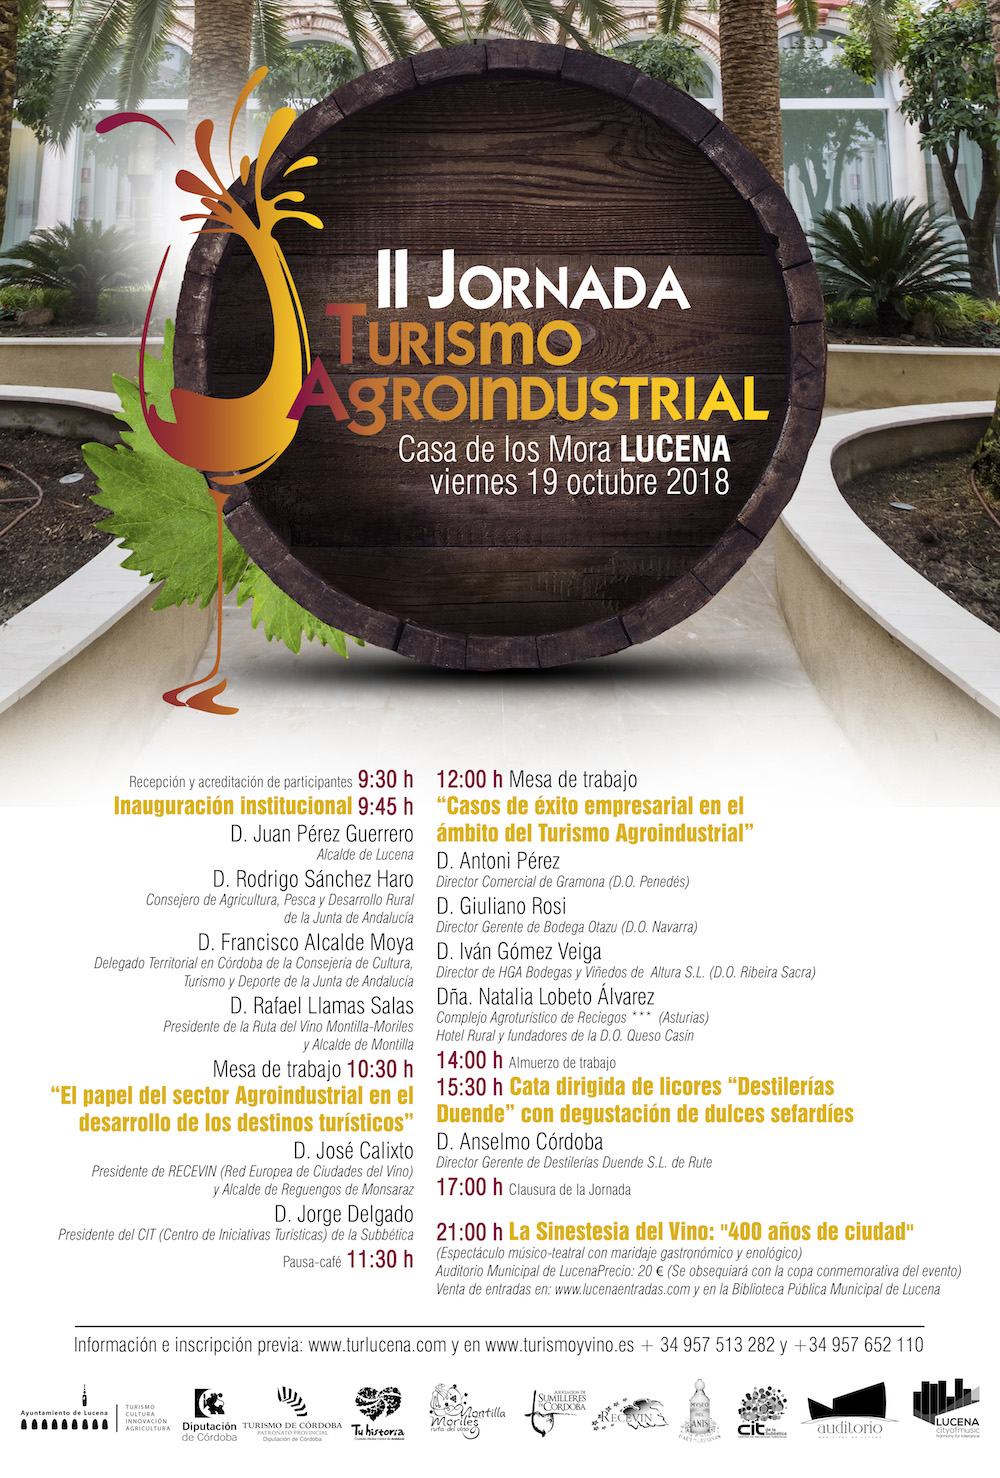 La Ruta del Vino Montilla-Moriles celebra La II Edición de Jornada Turismo Agroindustrial en Lucena